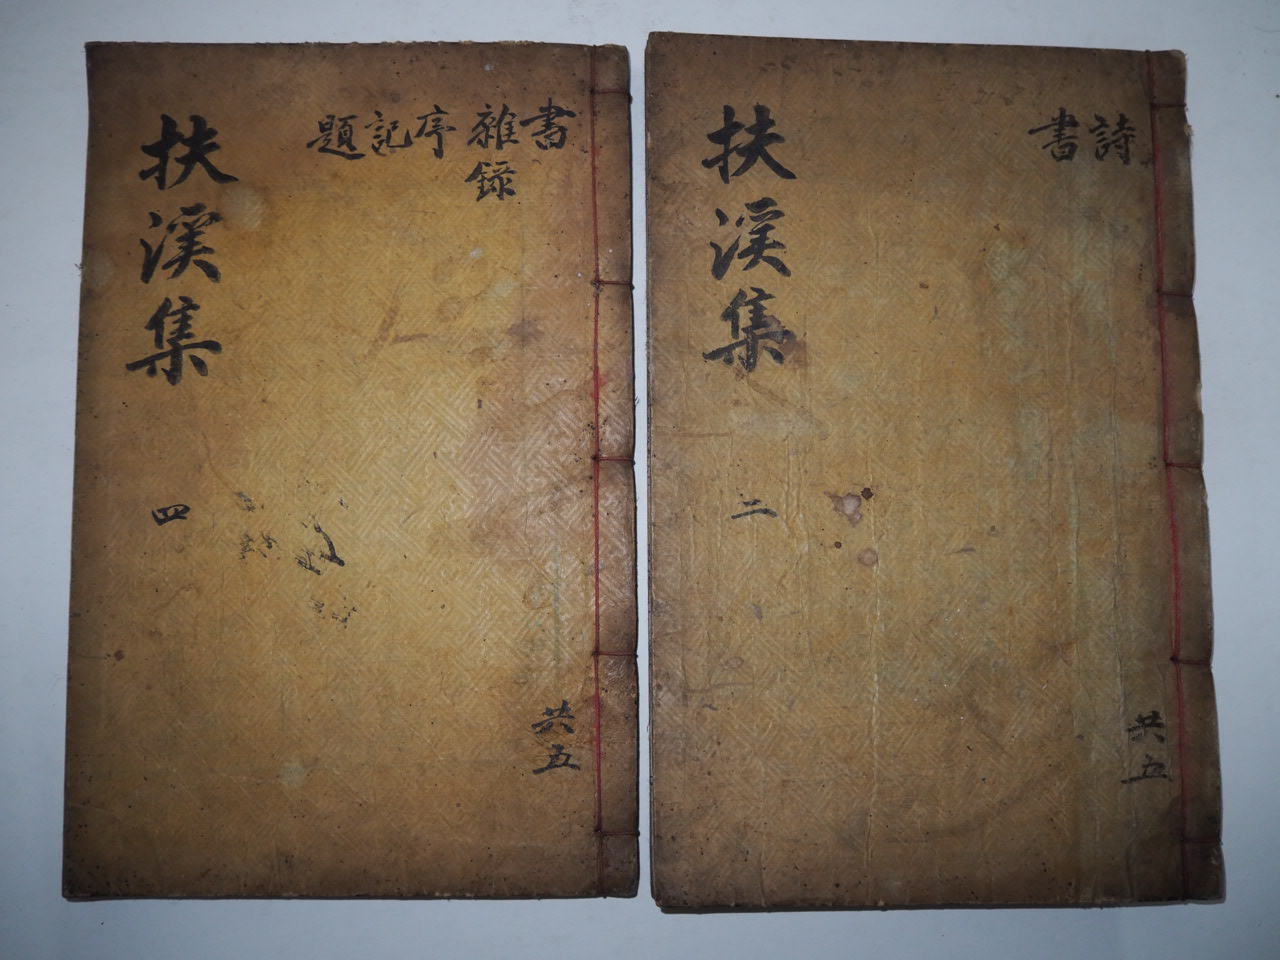 1913년 목활자본 전병순(田秉淳) 부계집(扶溪集) 2책